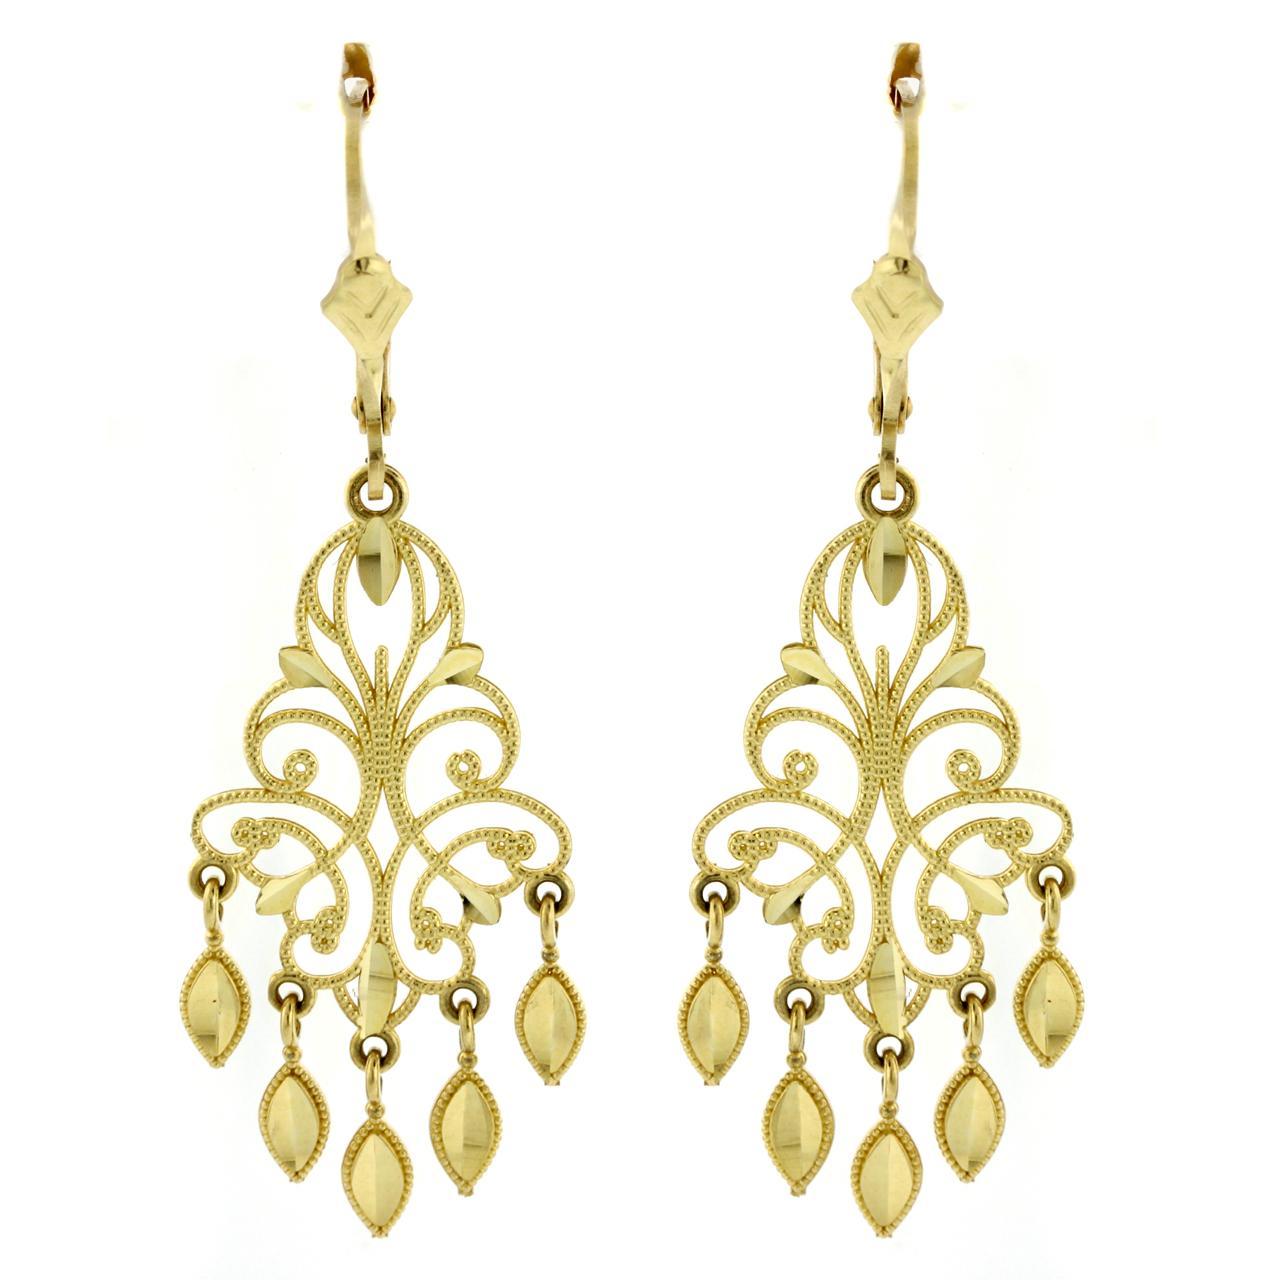 gold chandelier earrings 14k yellow gold fancy chandelier earrings YWGRGSJ